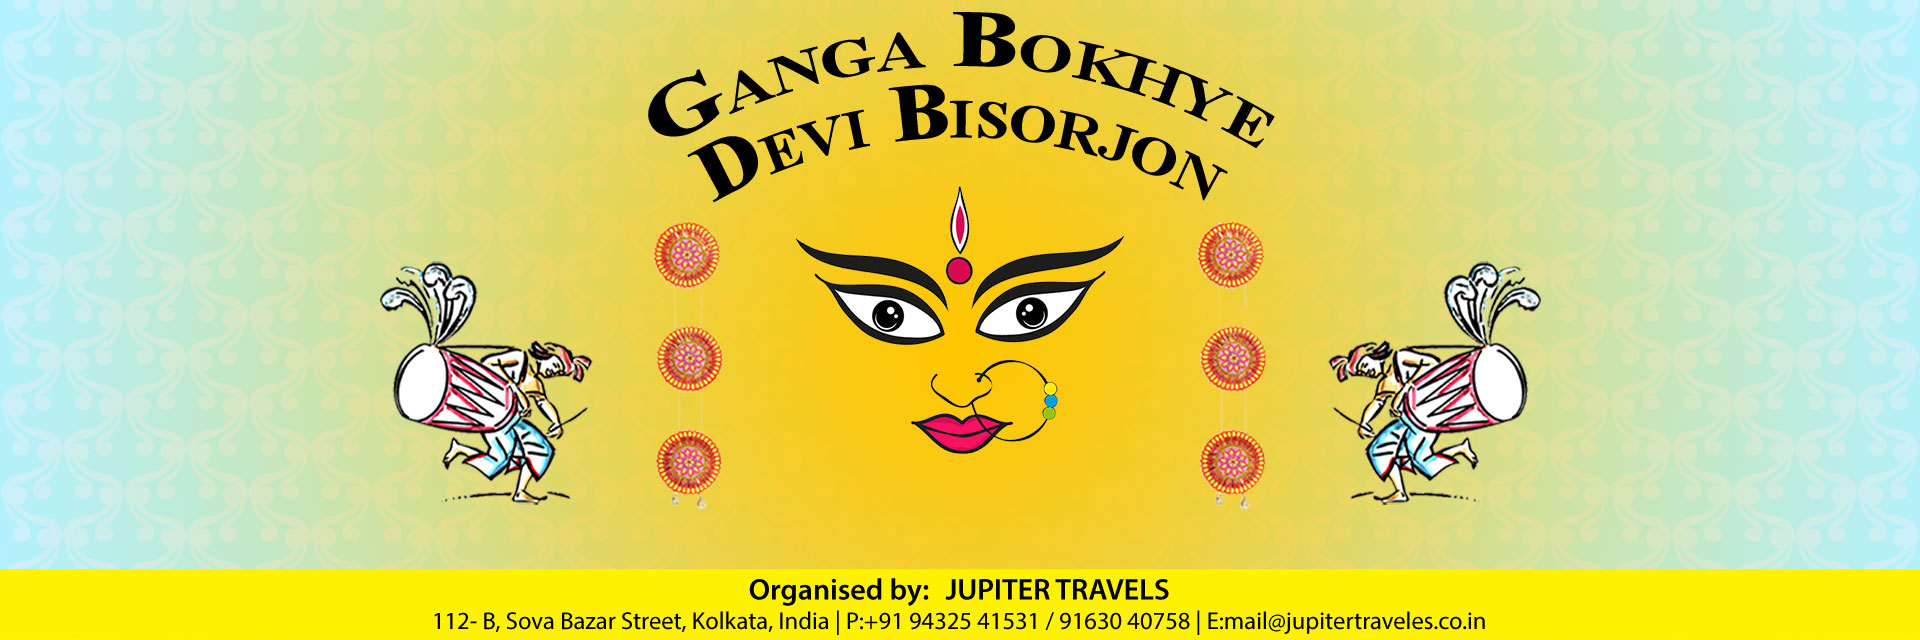 Ganga Bokhy-e Devi Visharjan Darshan 2021 - Bonedi Barir Durga Puja Parikrama